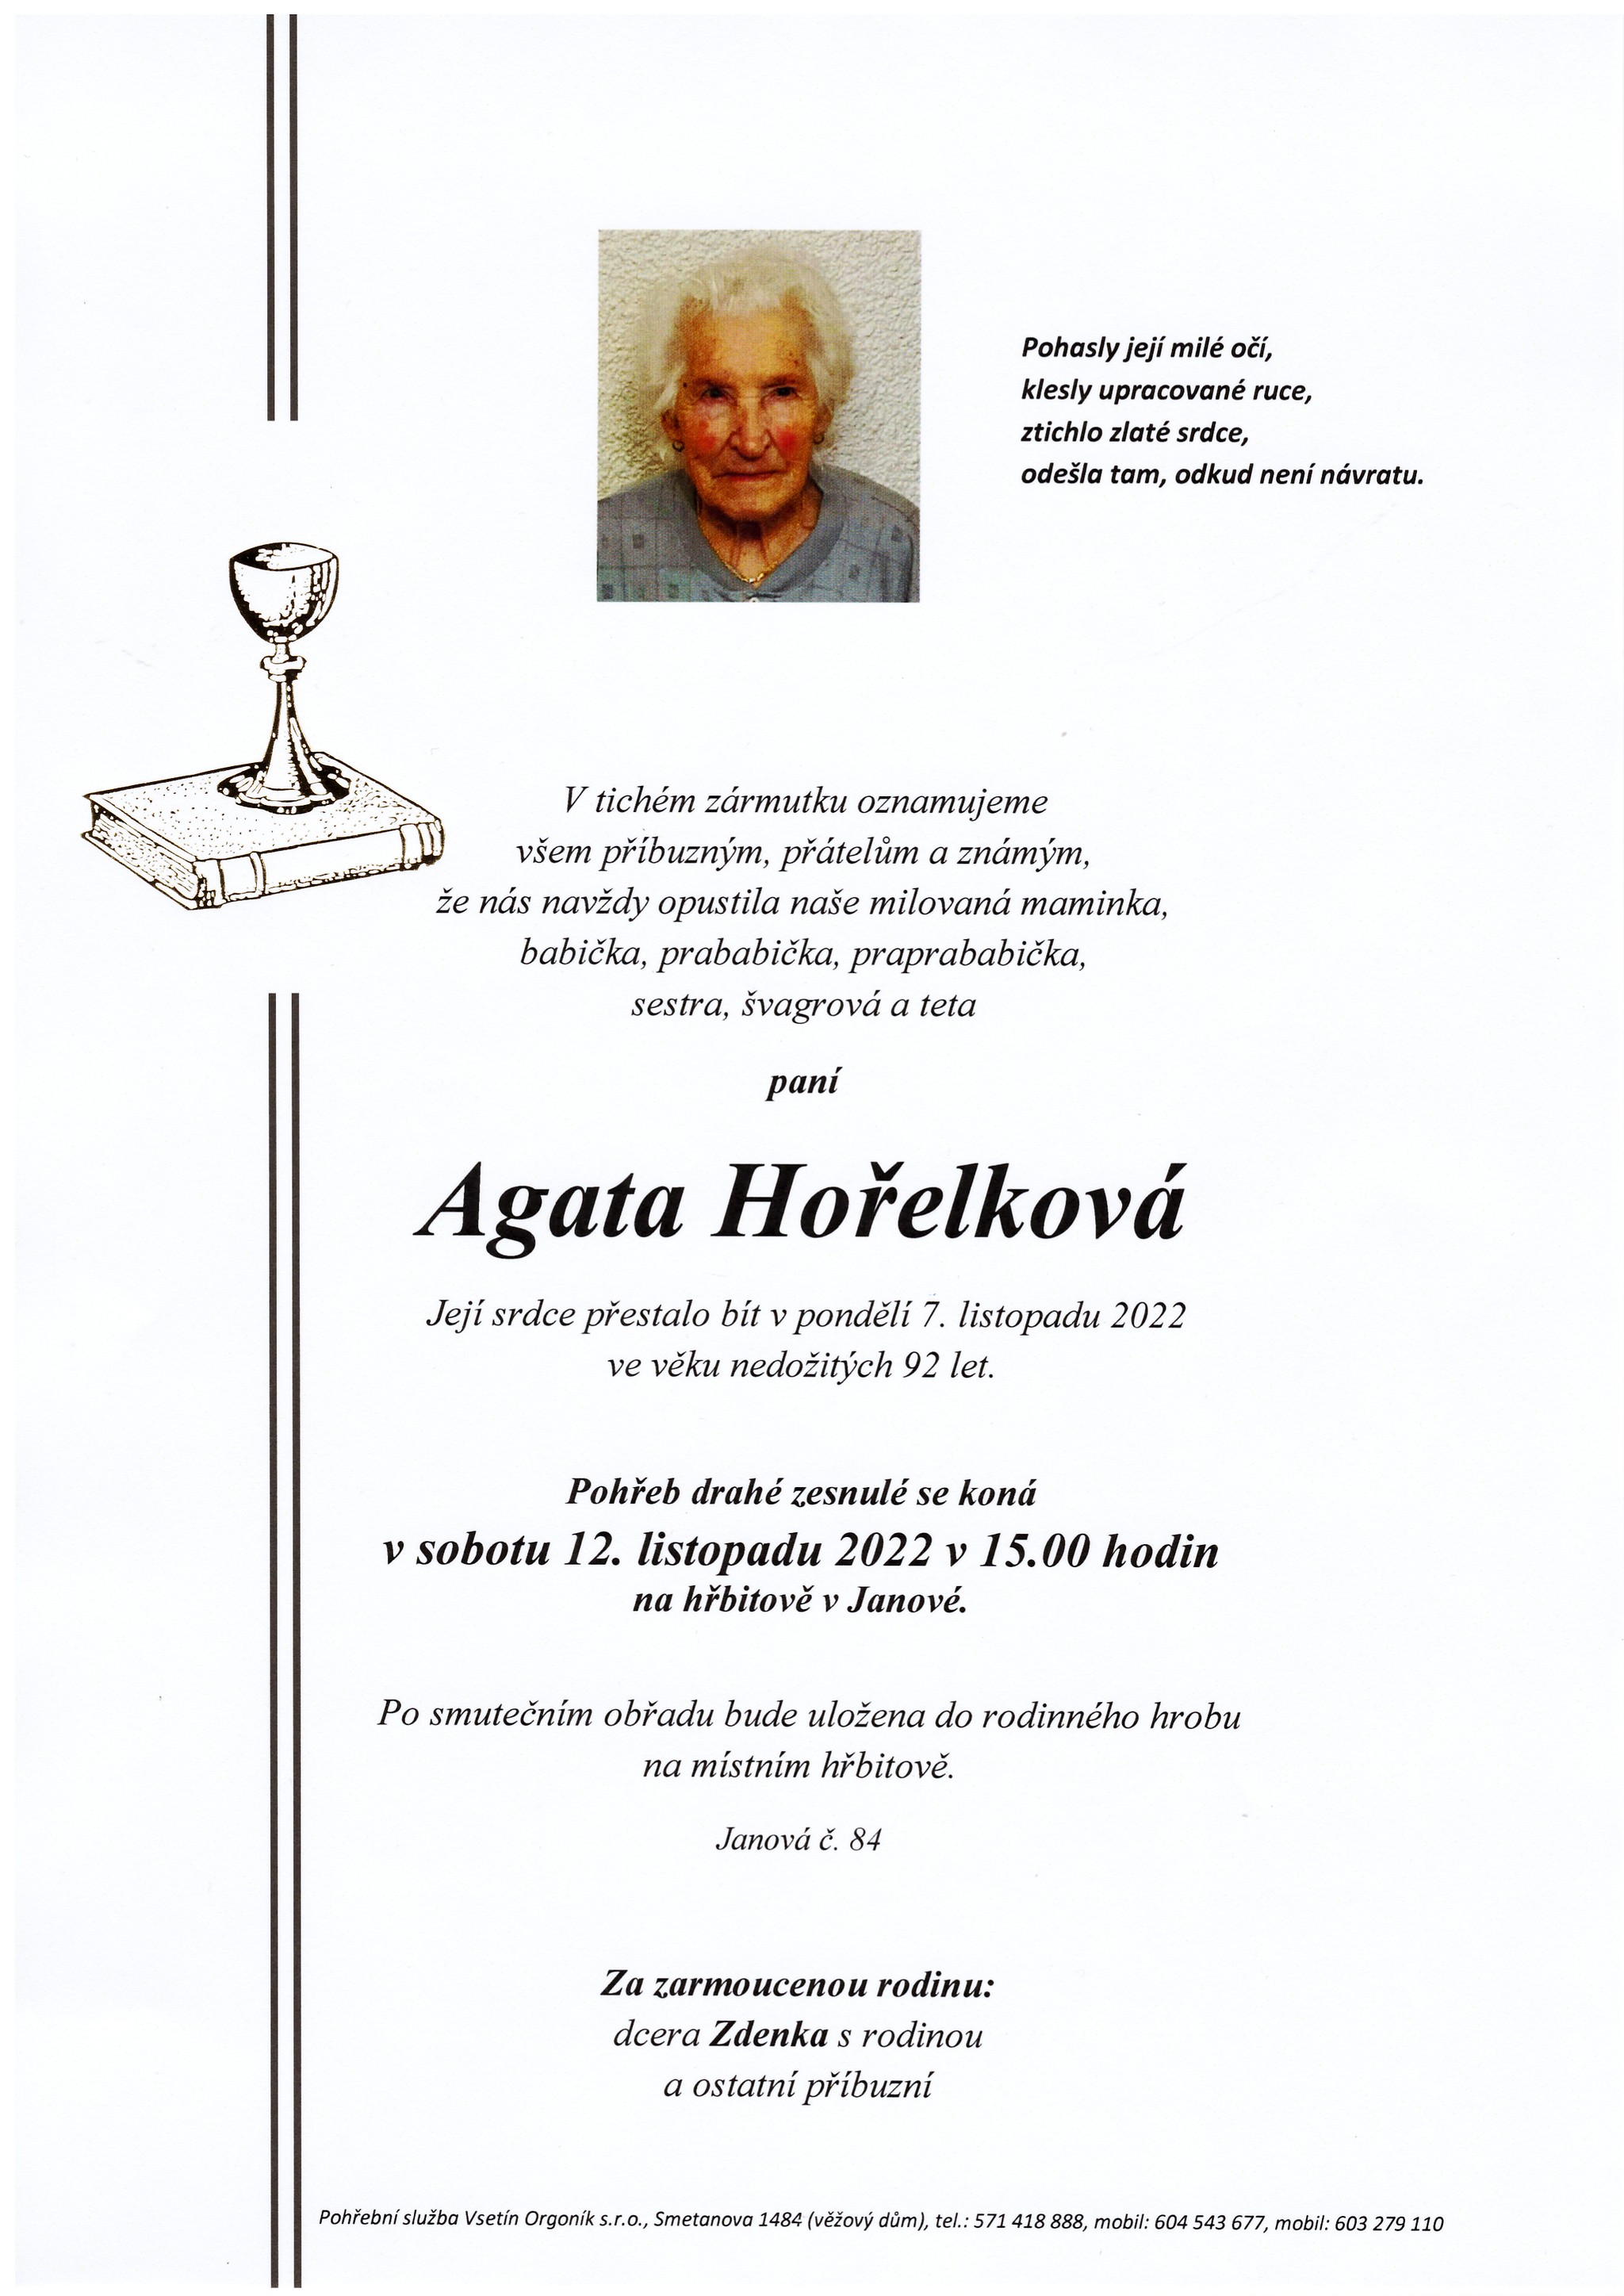 Agata Hořelková